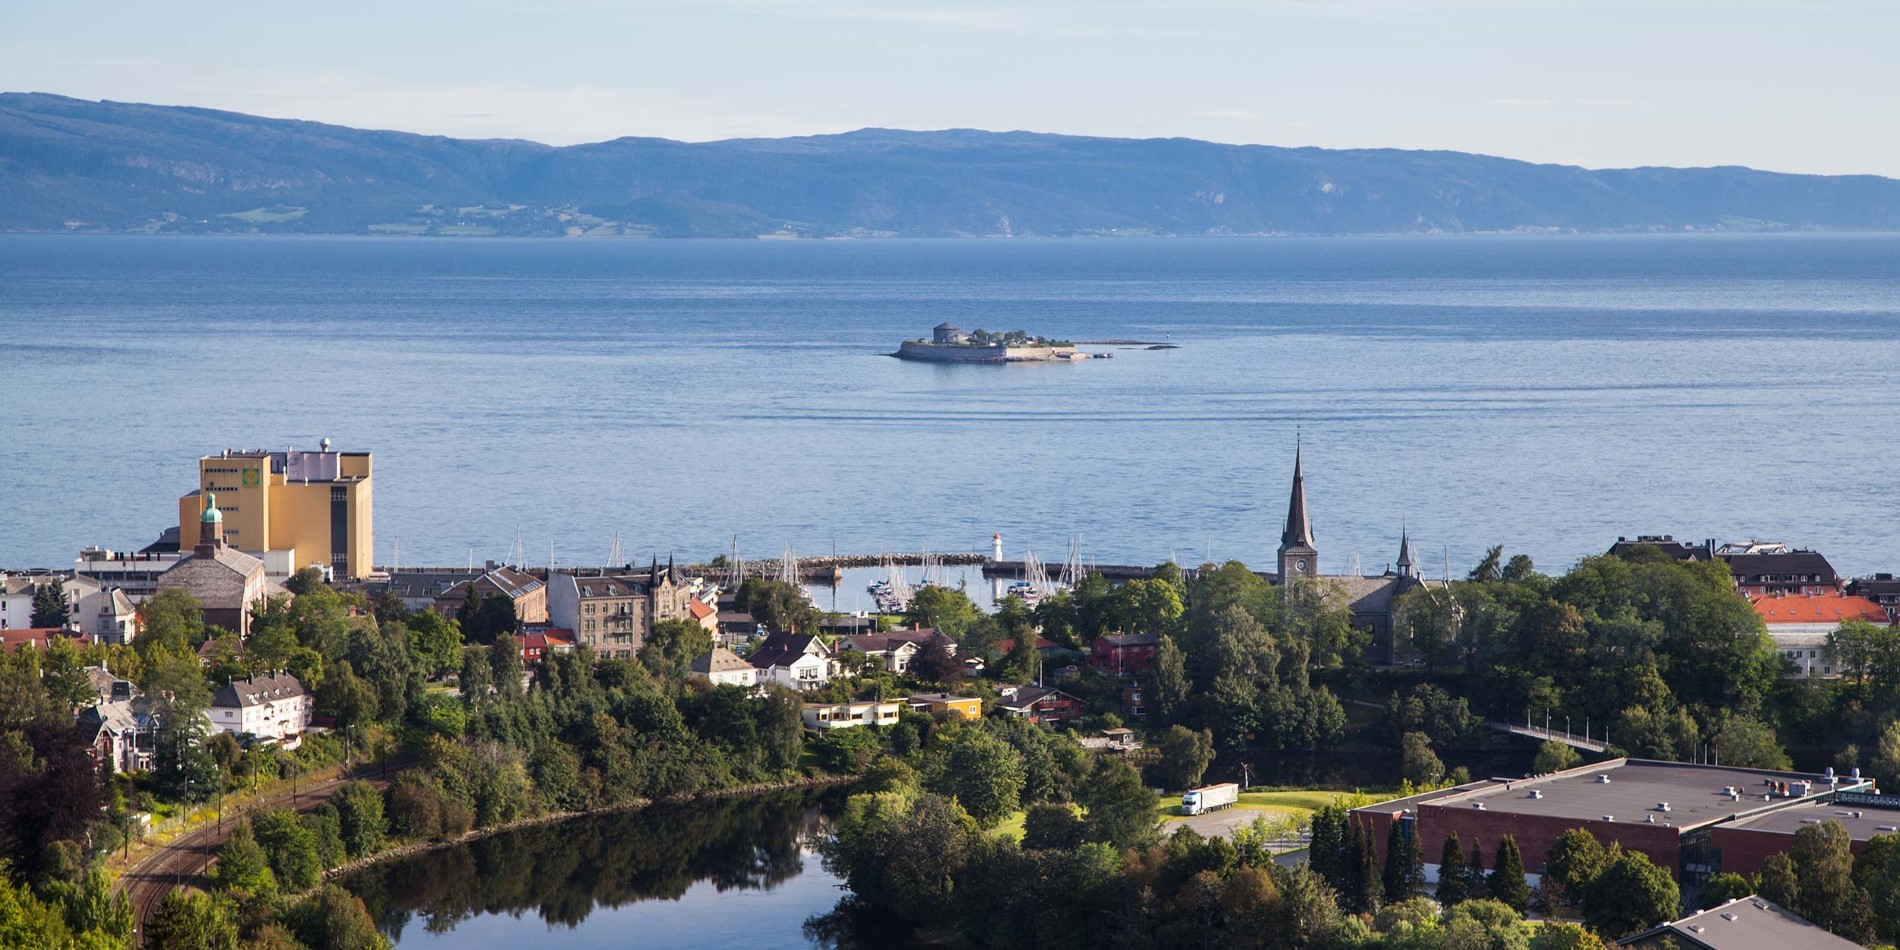 Le Trondheimsfjord est le troisième plus long fjord de Norvège